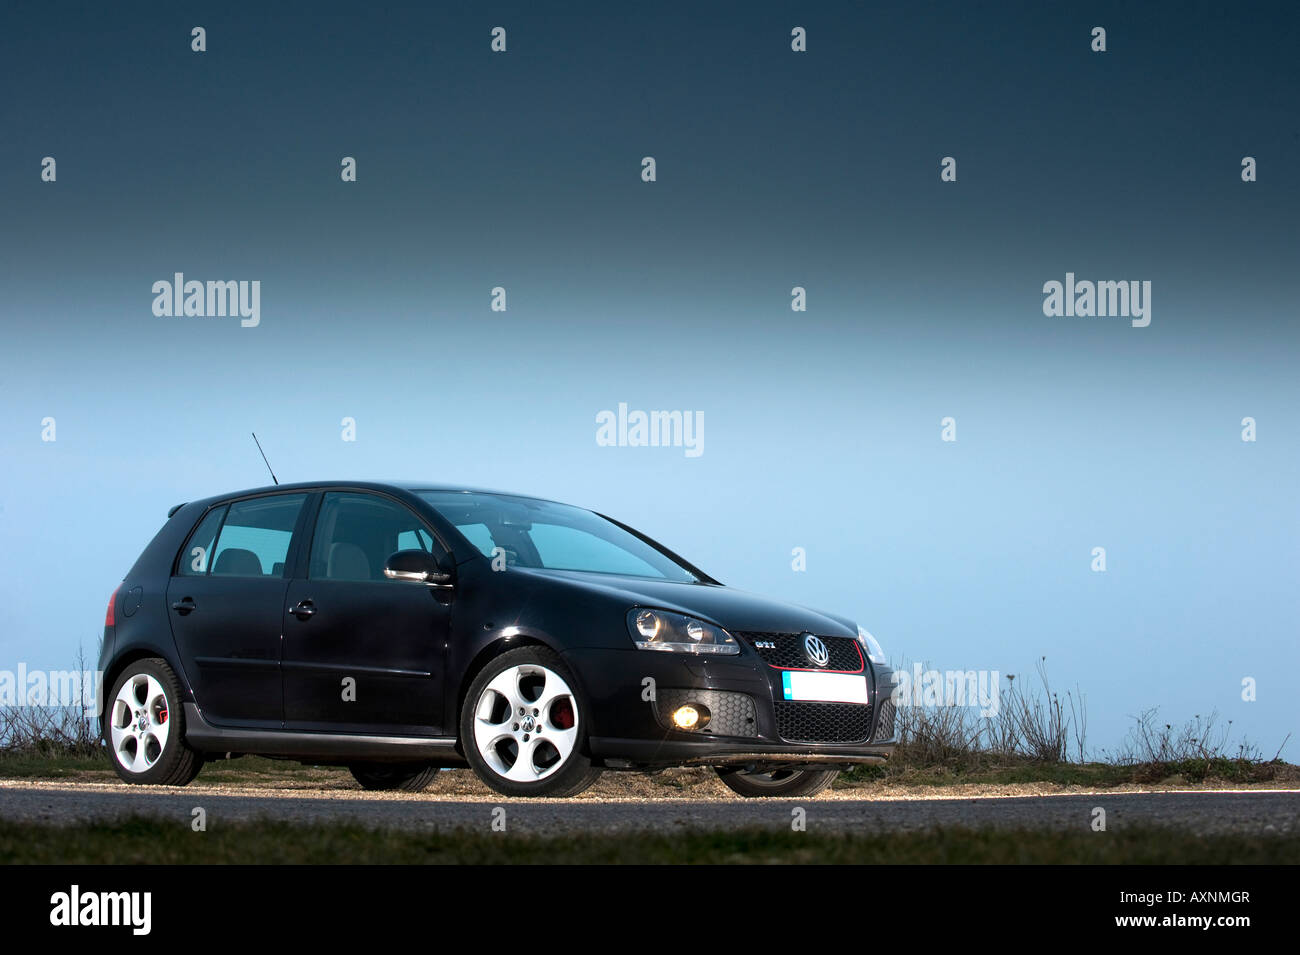 2007 Mark 5 Volkswagen VW Golf GTi Turbo black Stock Photo - Alamy